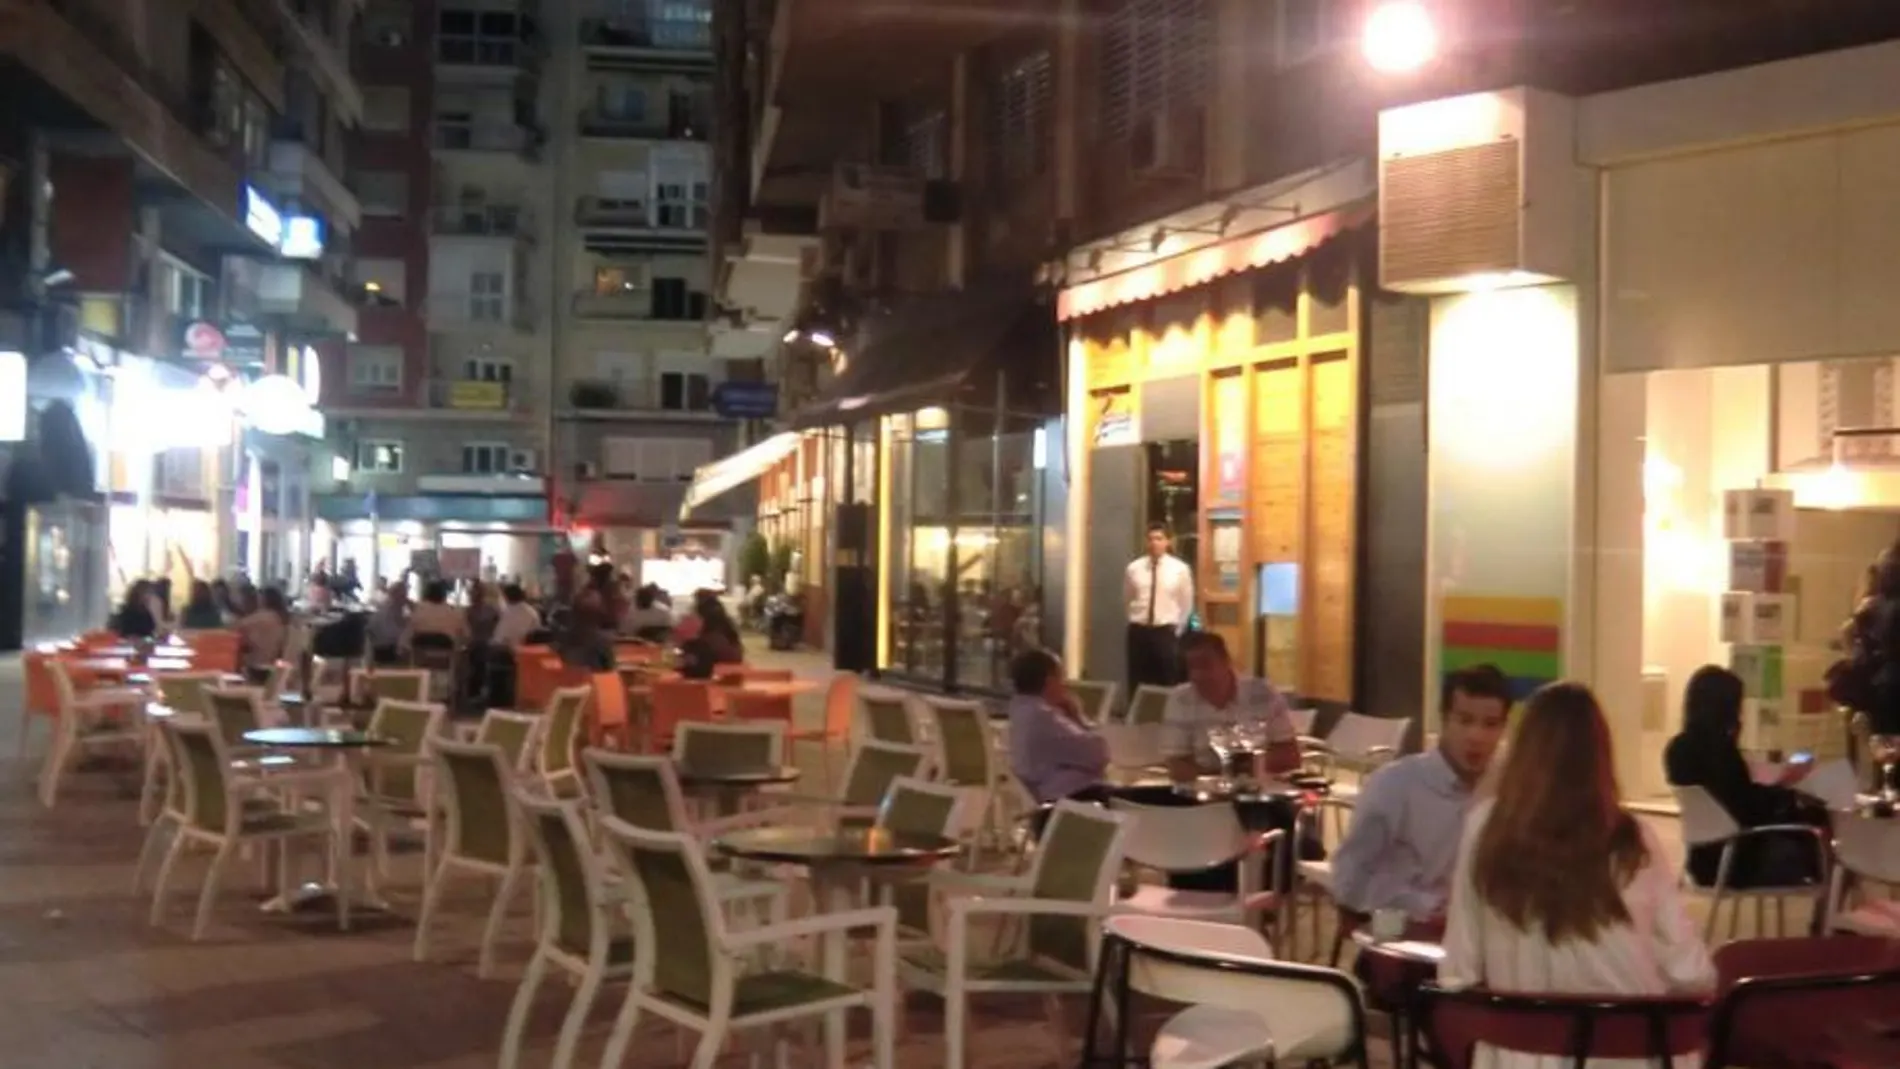 Hosteleros, vecinos y Ayuntamiento se enfrentan por el ruido que provocan las terrazas de bares y restaurantes en el centro de la ciudad. Europa Press